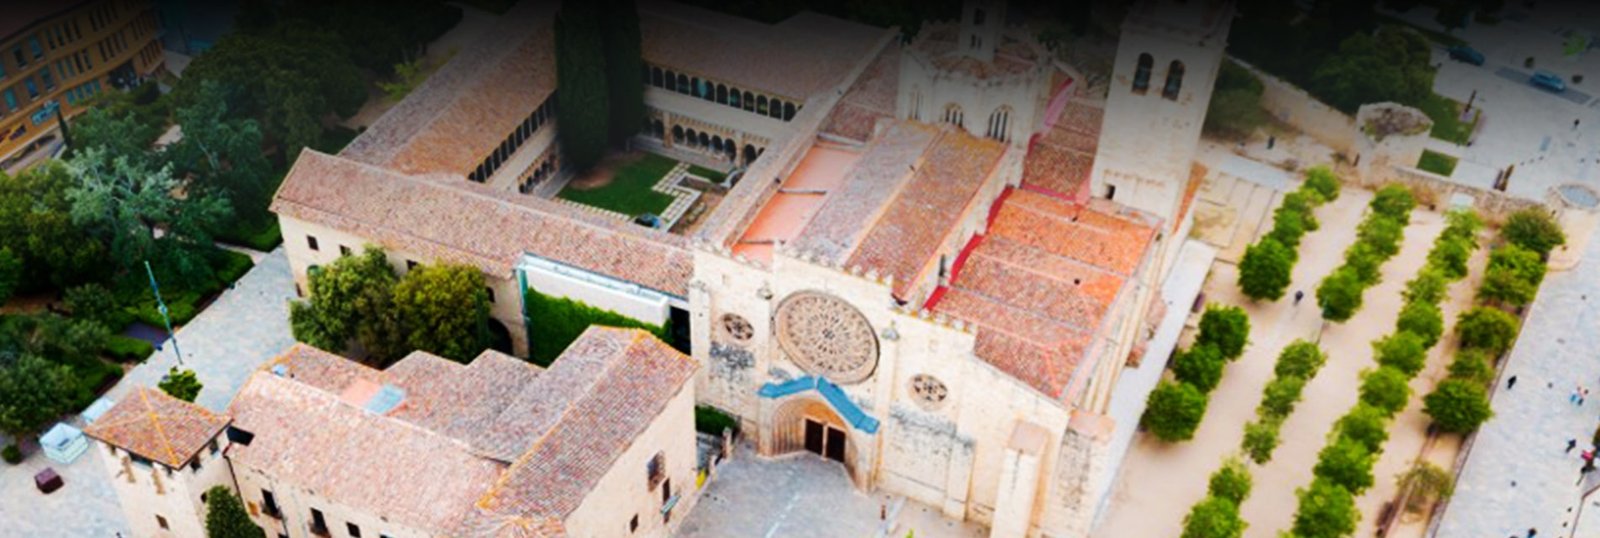 Monasterio de Sant Cougat Header - Origenes de Europa